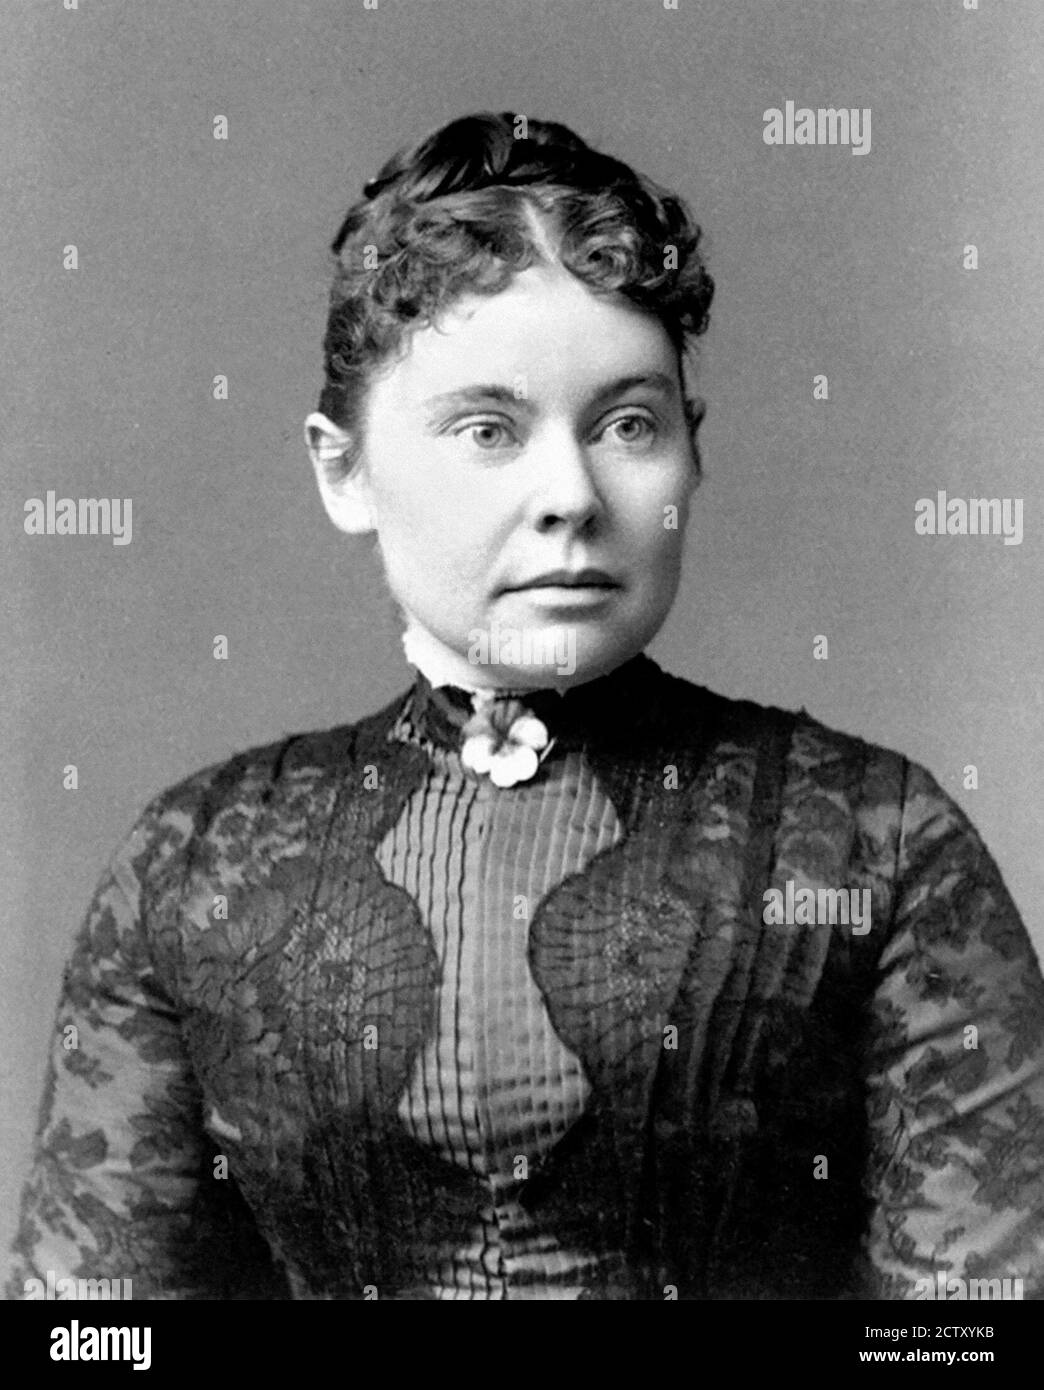 Lizzie Borden. Porträt von Lizzie Andrew Borden (1860-1927), um 1890. Borden wurde wegen des Axtmordes an Vater und Stiefmutter angeklagt und freigesprochen. Stockfoto